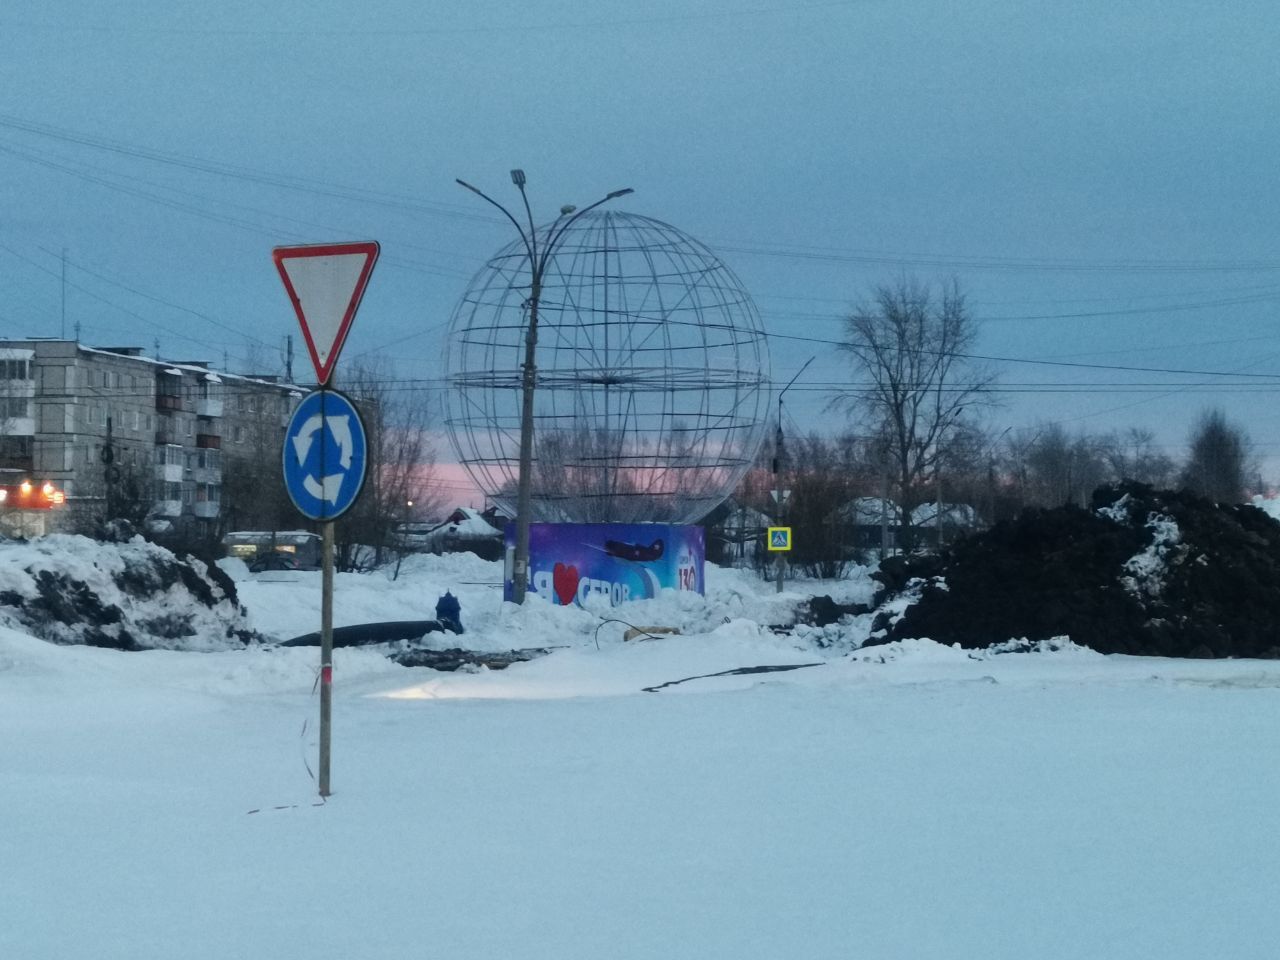 Часть Сортировки на время останется без воды и отопления – из-за ремонта дороги на Пржевальского